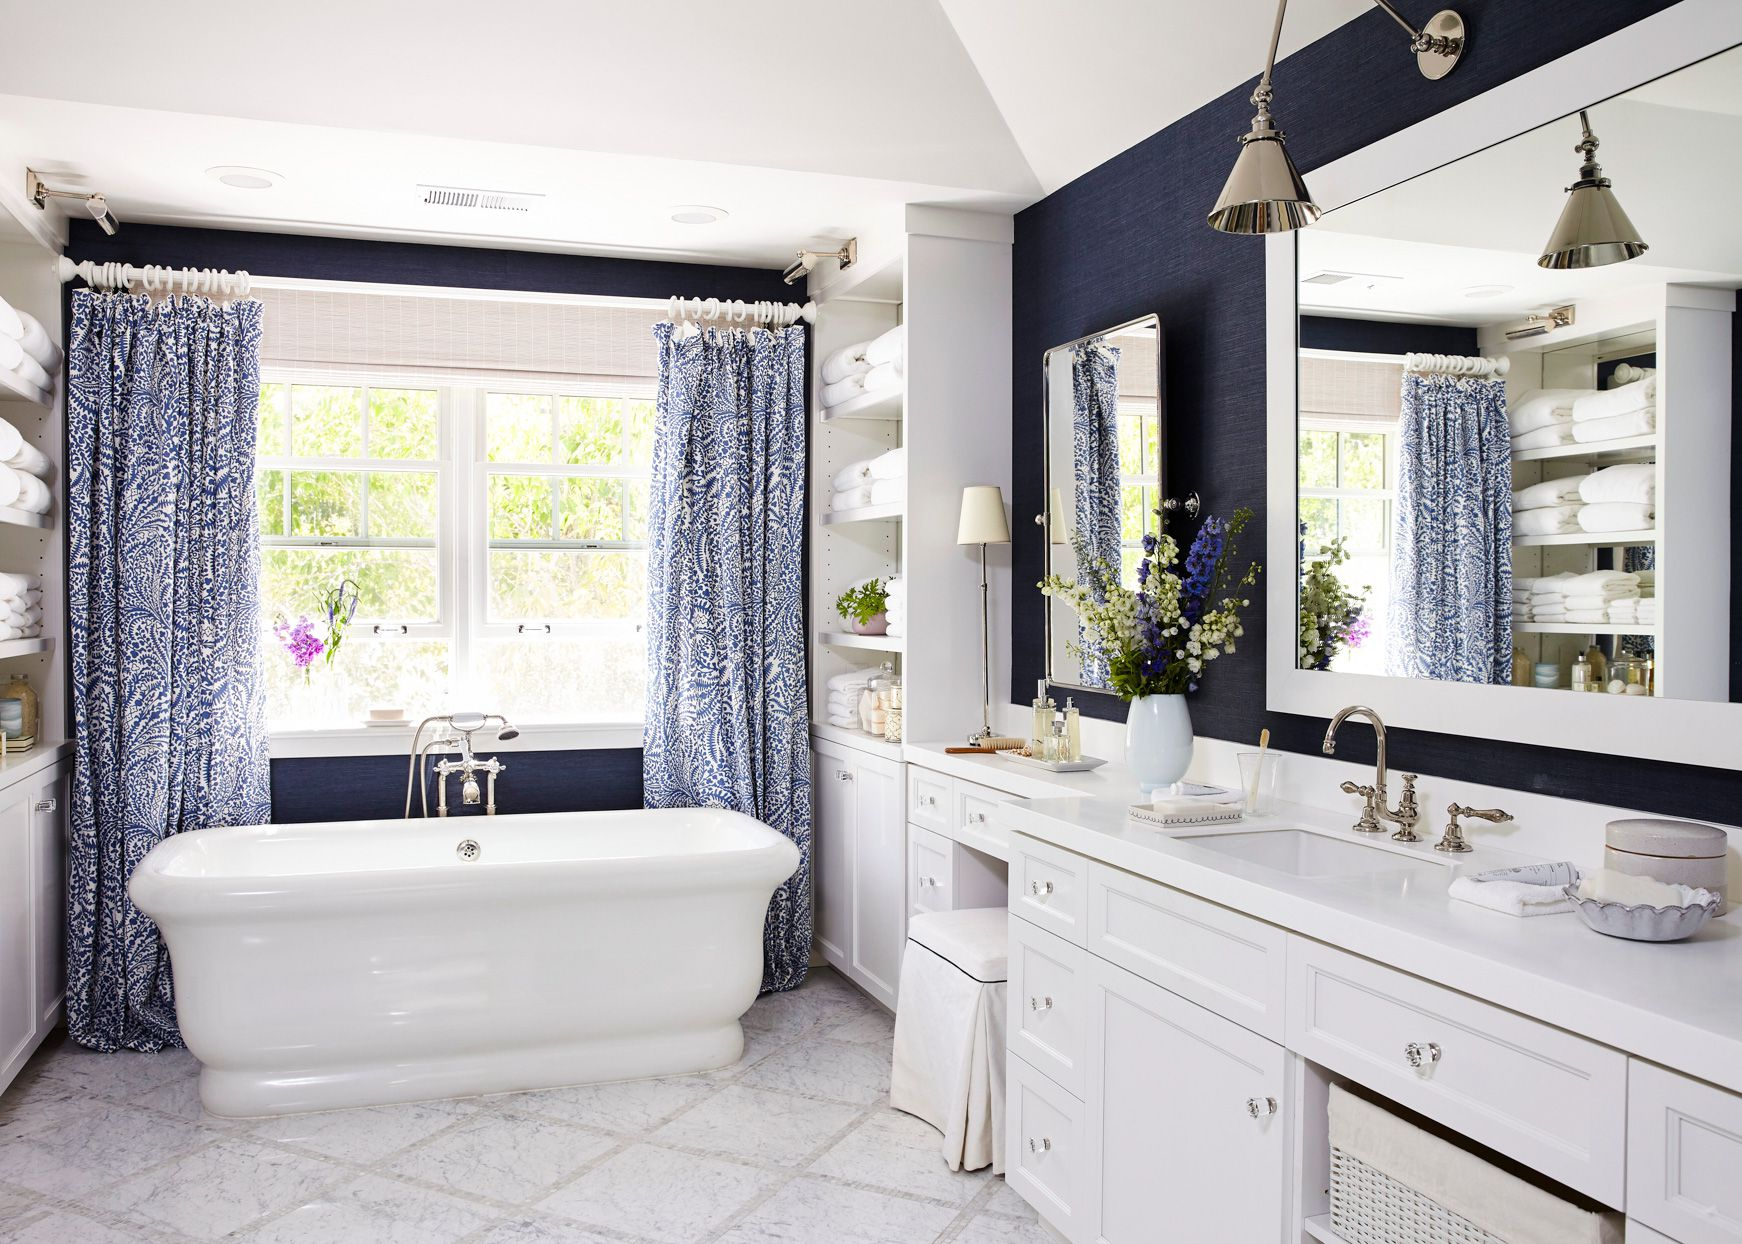 Contoh desain kamar mandi dengan sentuhan warna navy sebagai aksen dinding via Better Home & Garden